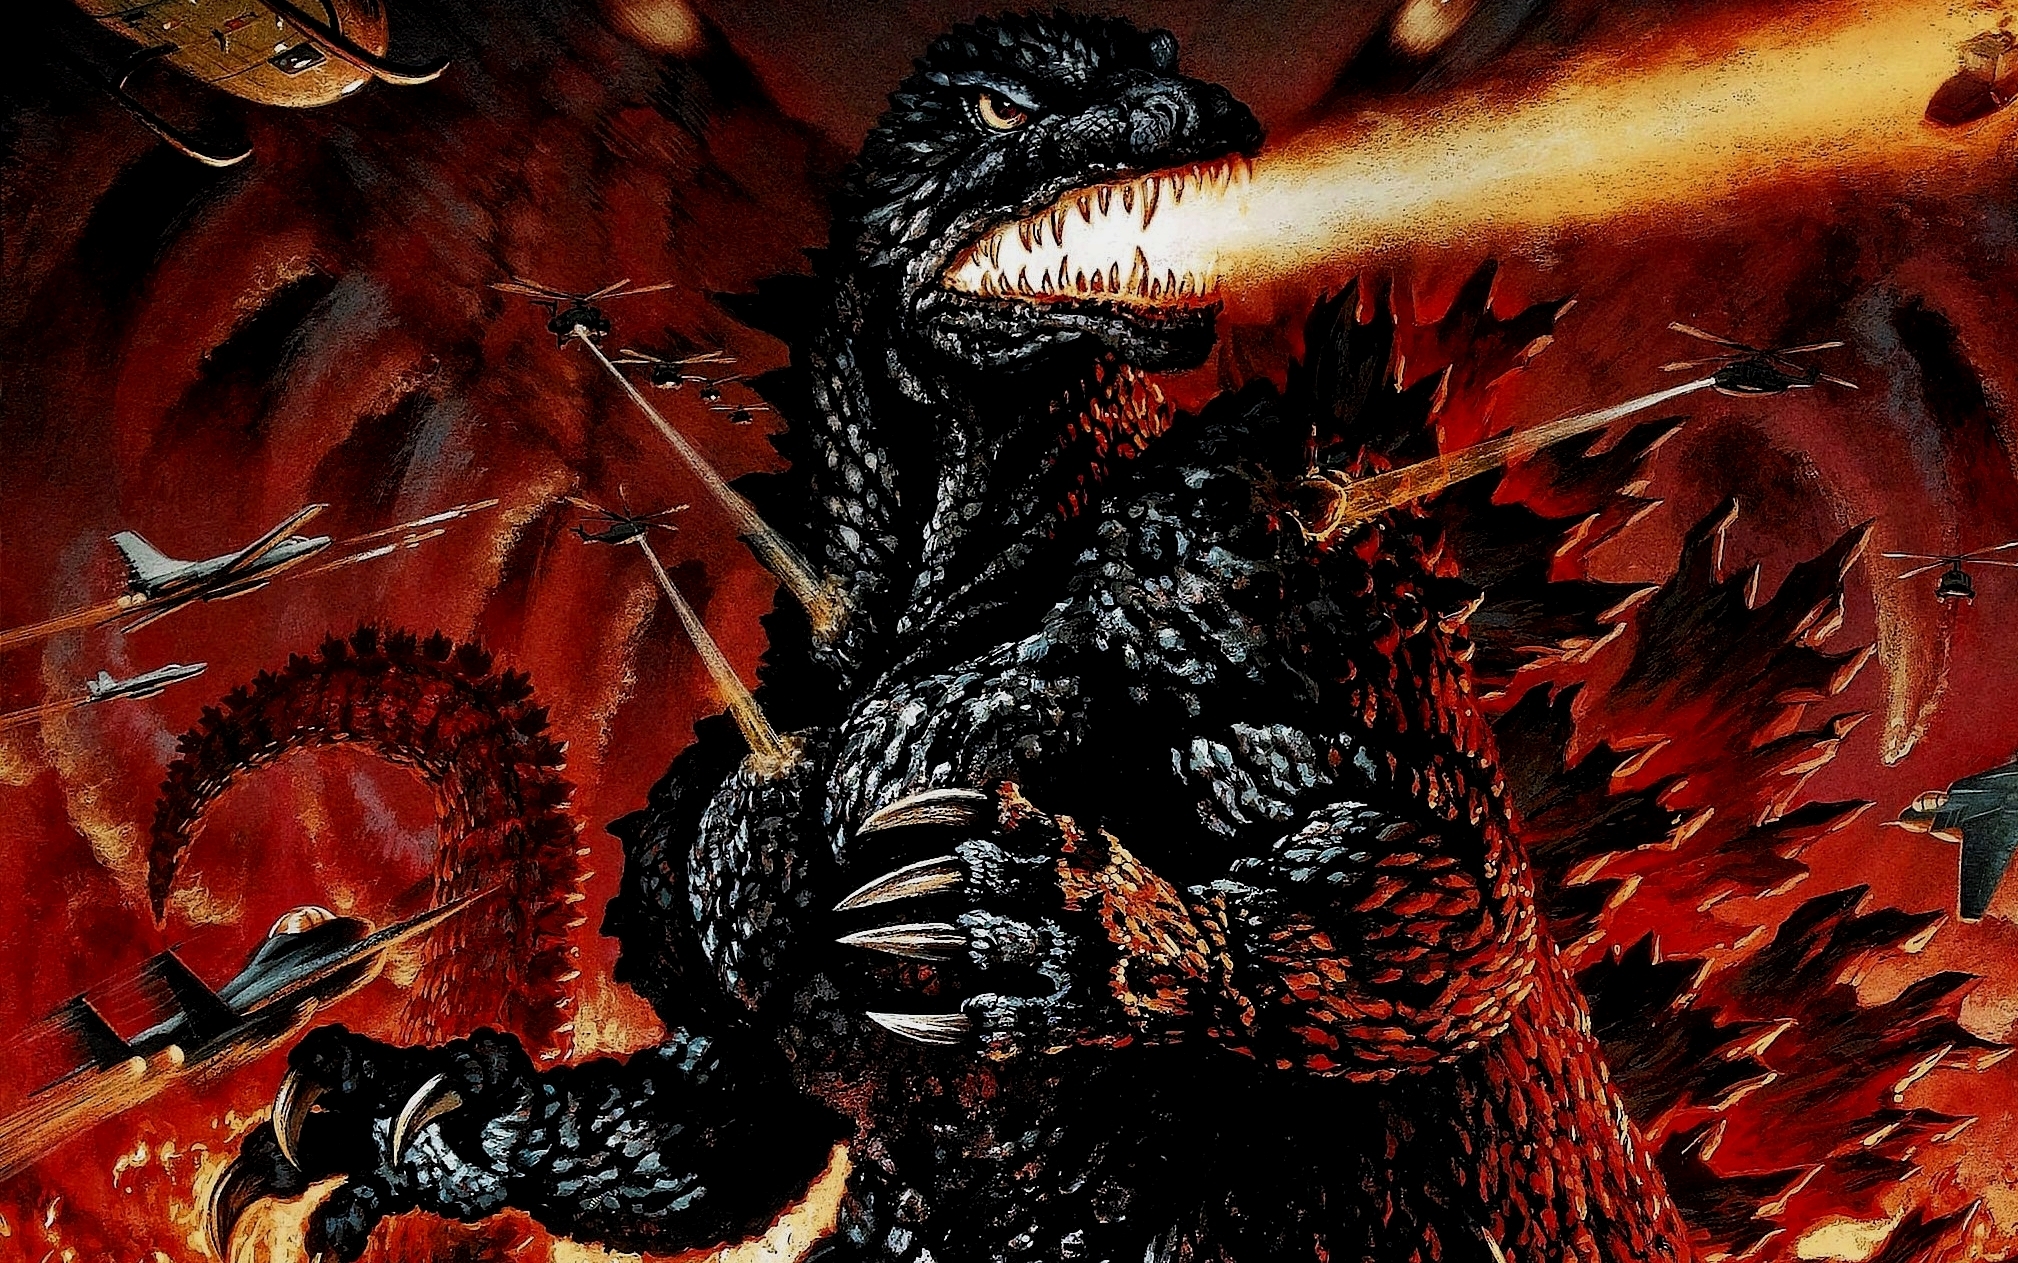 http://img1.wikia.nocookie.net/__cb20130824181759/fallout/images/9/91/Godzilla_2000.jpg